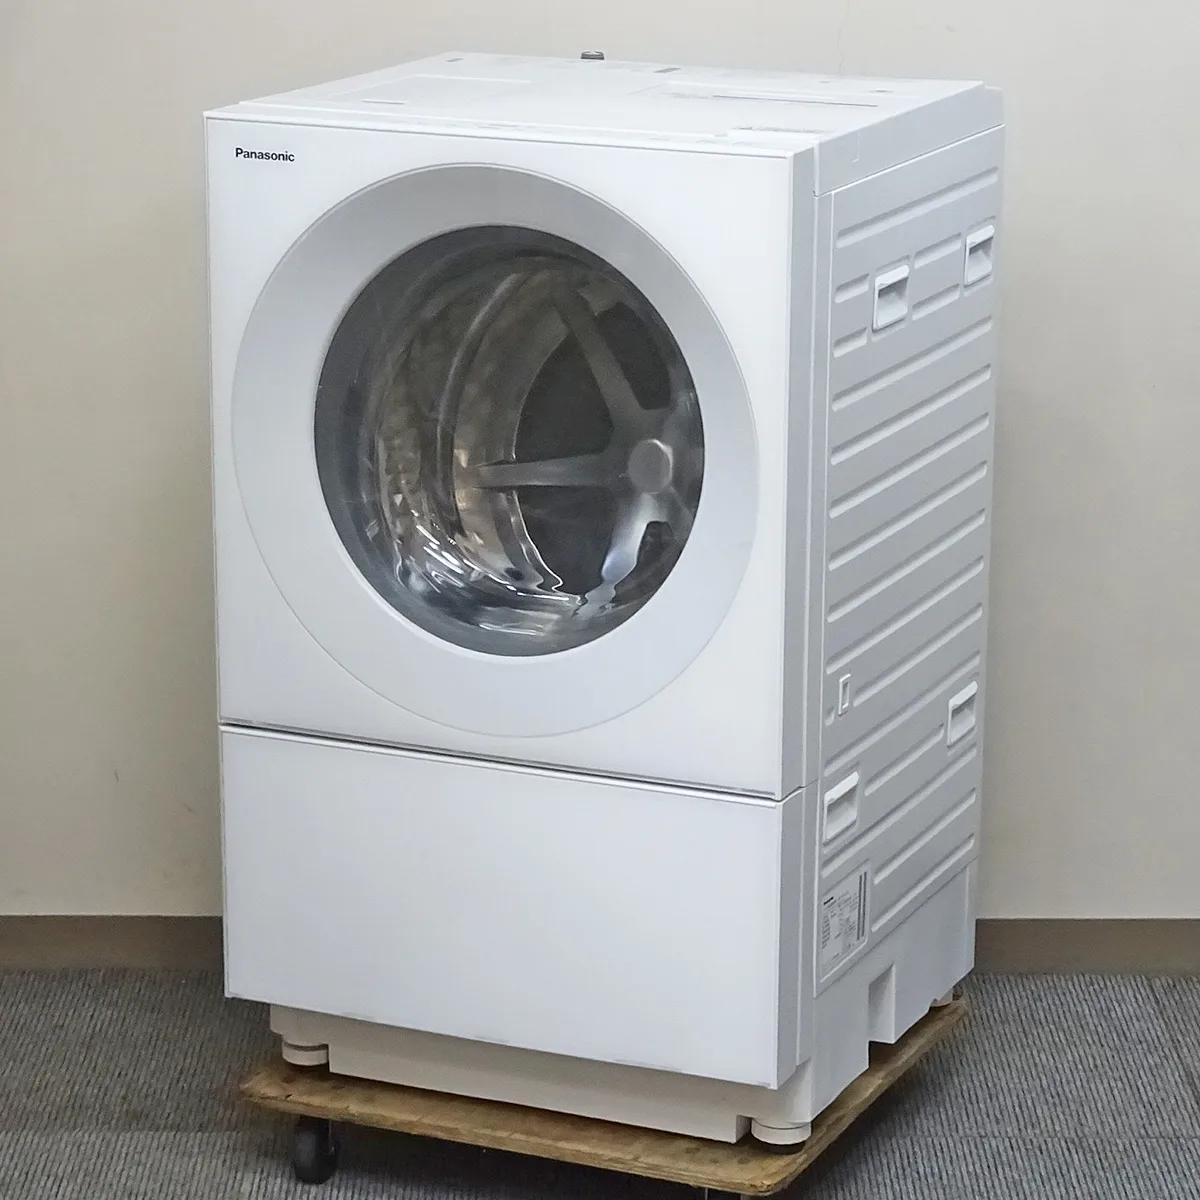 Panasonic【NA-VG740L】パナソニック Cuble キューブル ななめドラム式洗濯乾燥機 洗濯7kg、乾燥3.5kg 左開き 中古品